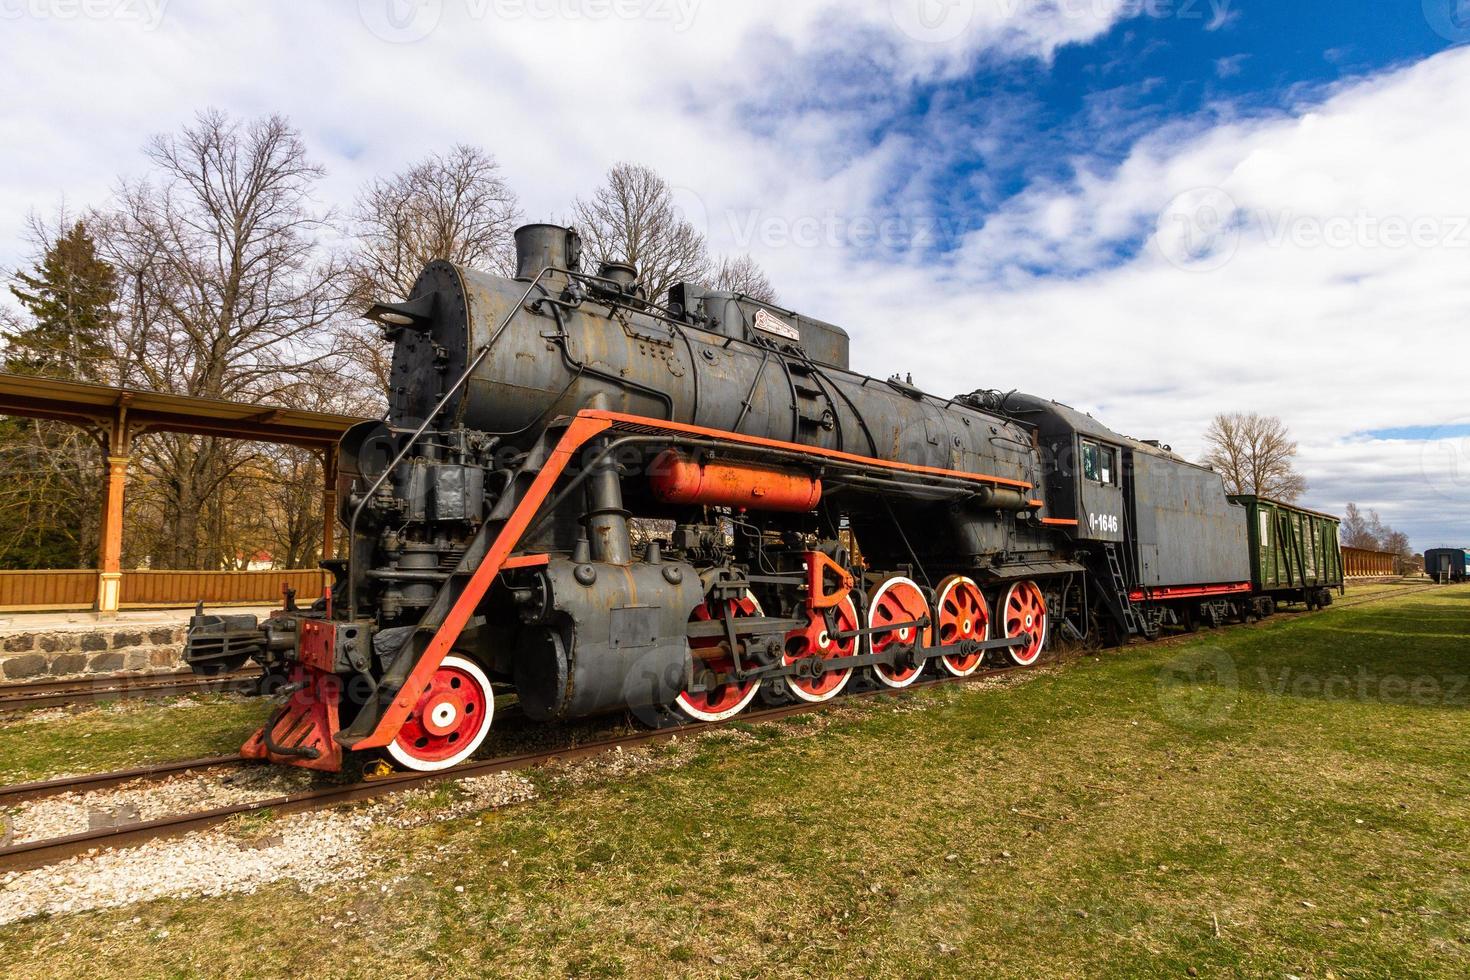 anciens wagons et voies ferrées photo